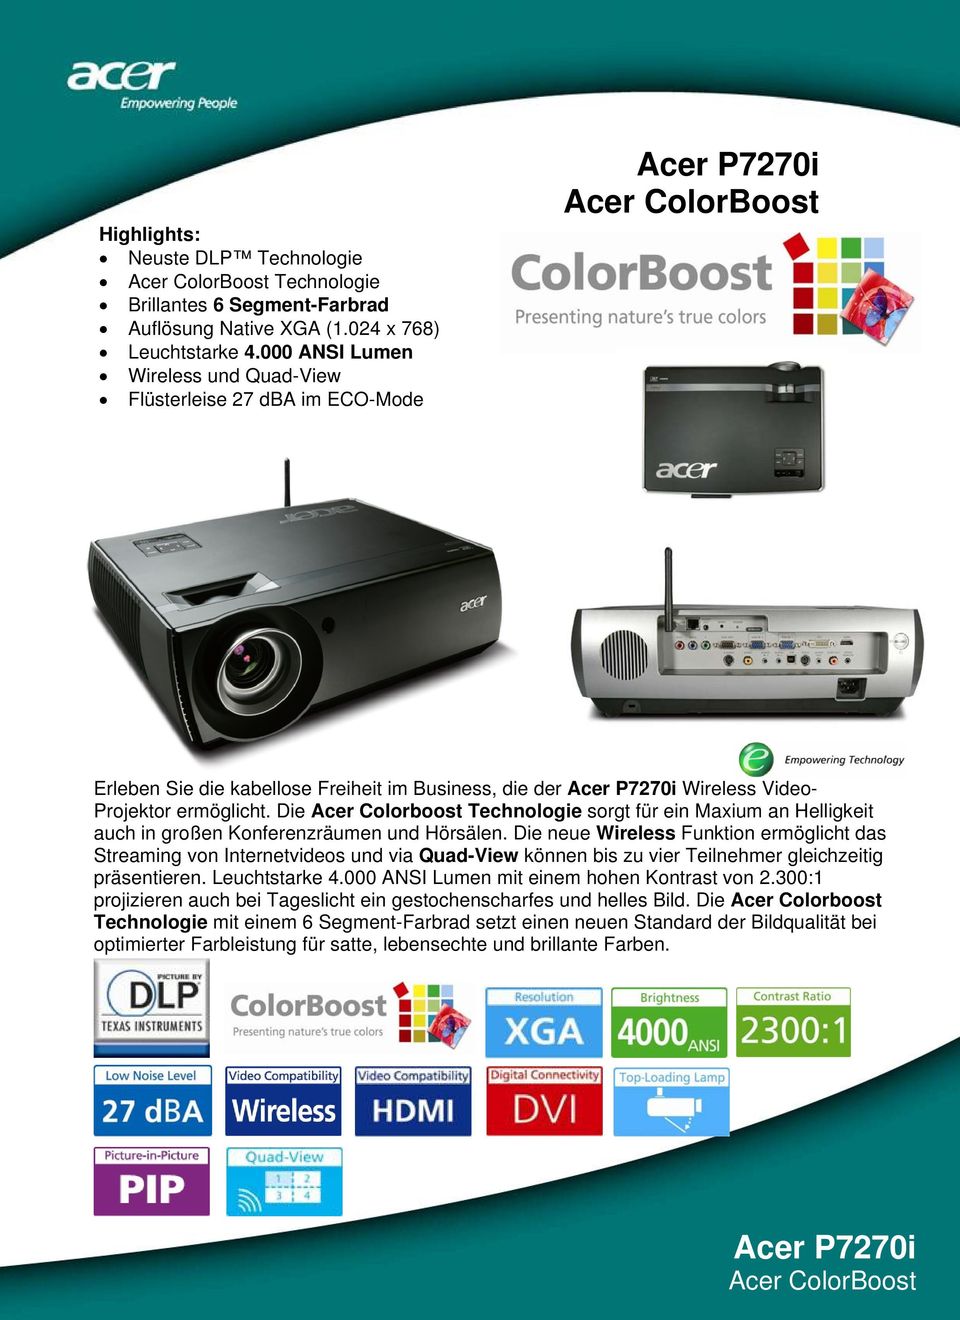 Die Acer Colorboost Technologie sorgt für ein Maxium an Helligkeit auch in großen Konferenzräumen und Hörsälen.